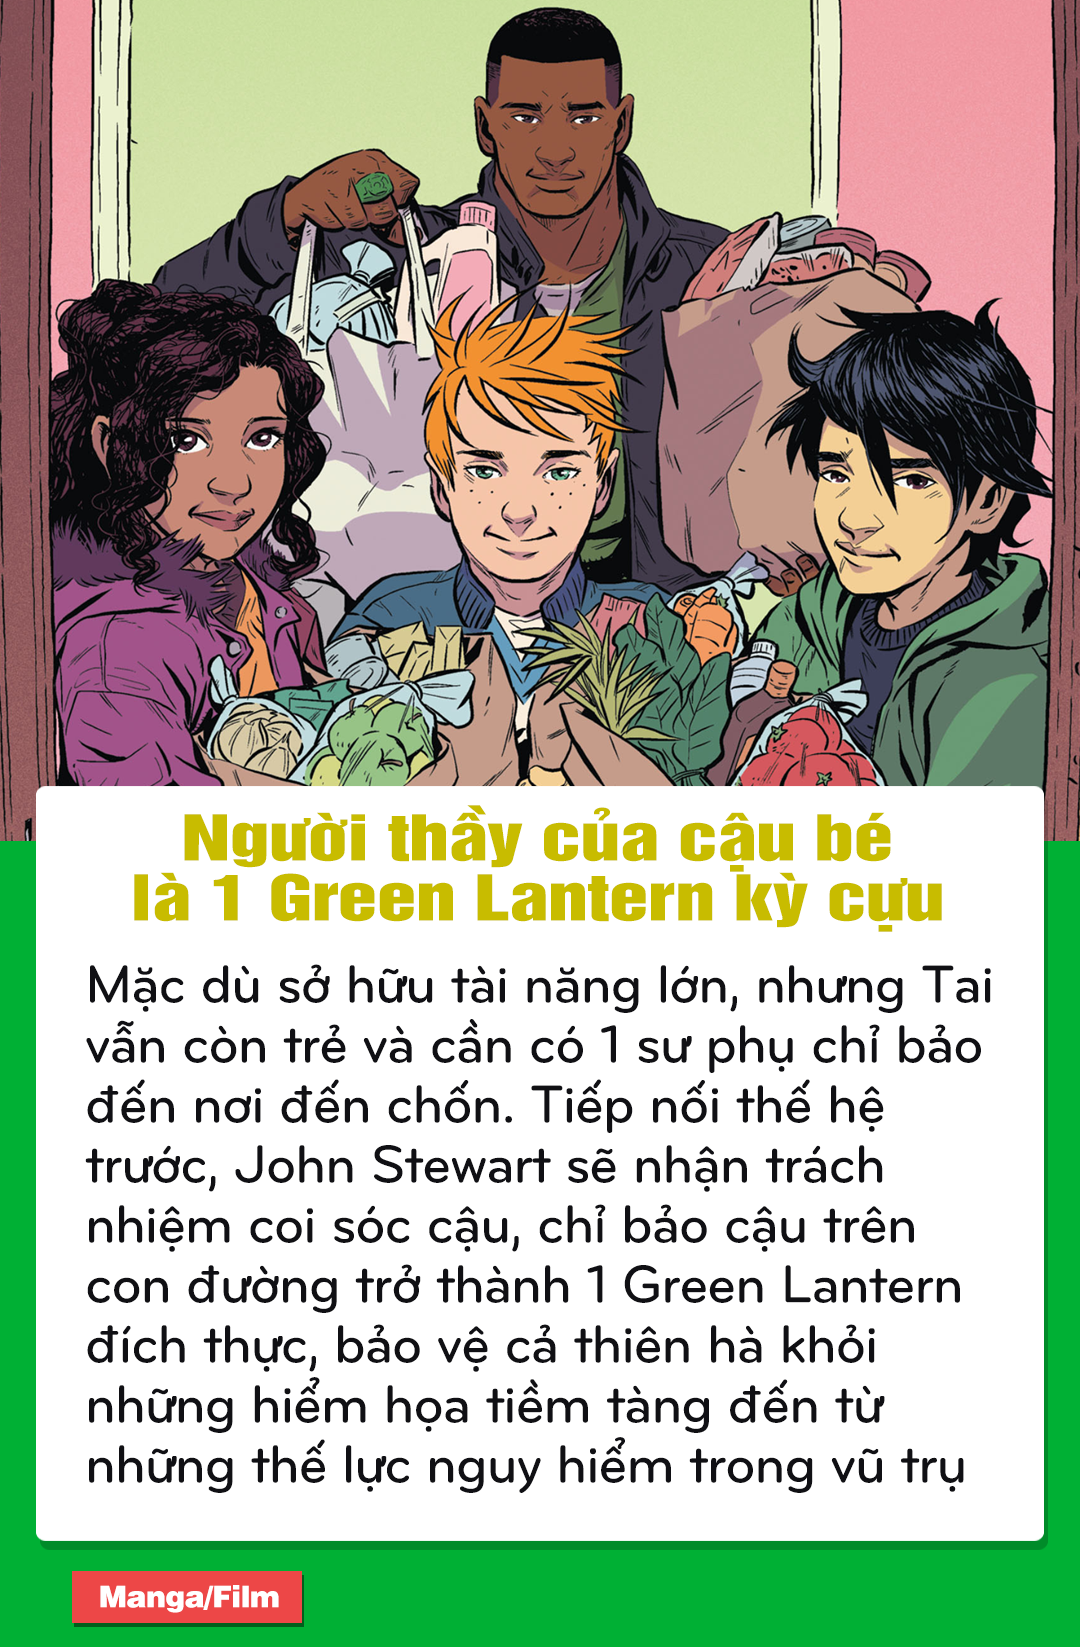 DC Comics: Điểm lại những chi tiết thú vị trong bộ truyện về siêu anh hùng Green Lantern người Việt - Tài Phạm - Ảnh 13.